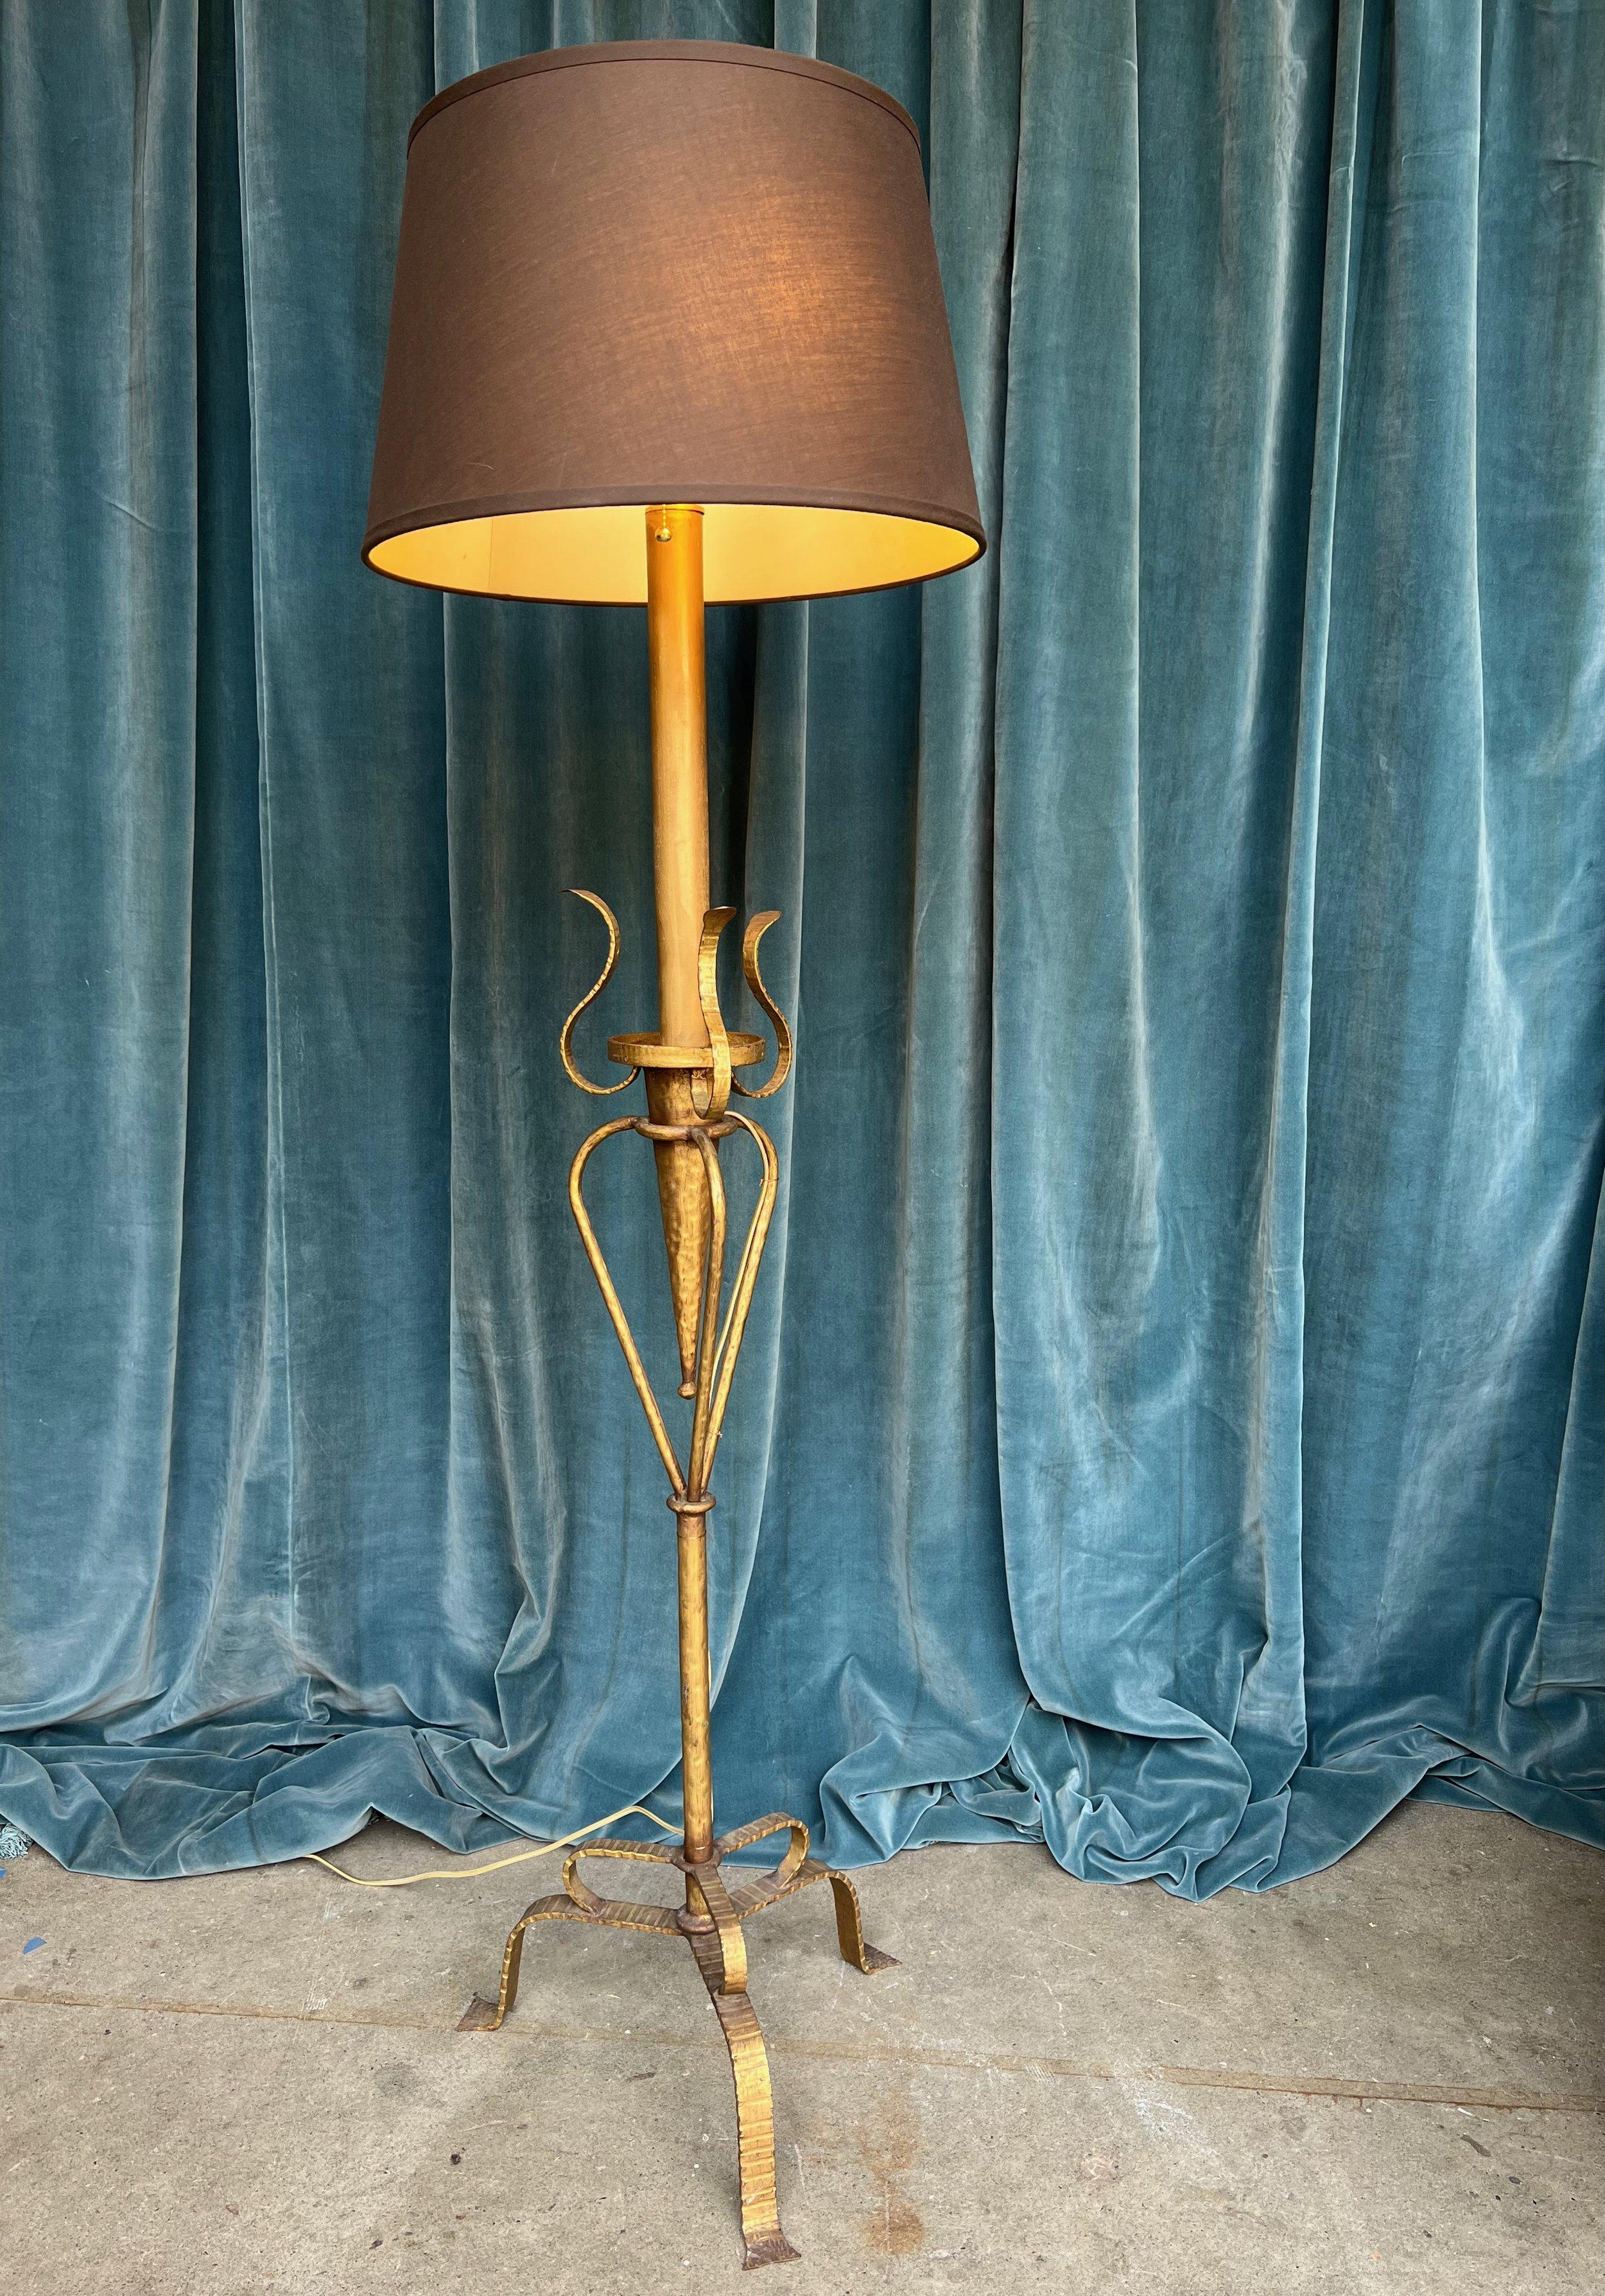 Wir stellen eine einzigartige spanische Stehlampe aus vergoldetem Metall aus den 1950er Jahren vor. Dieses bezaubernde Stück verbindet nahtlos die Stile des Jugendstils und der Moderne der Jahrhundertmitte. Seine organischen, geschnitzten